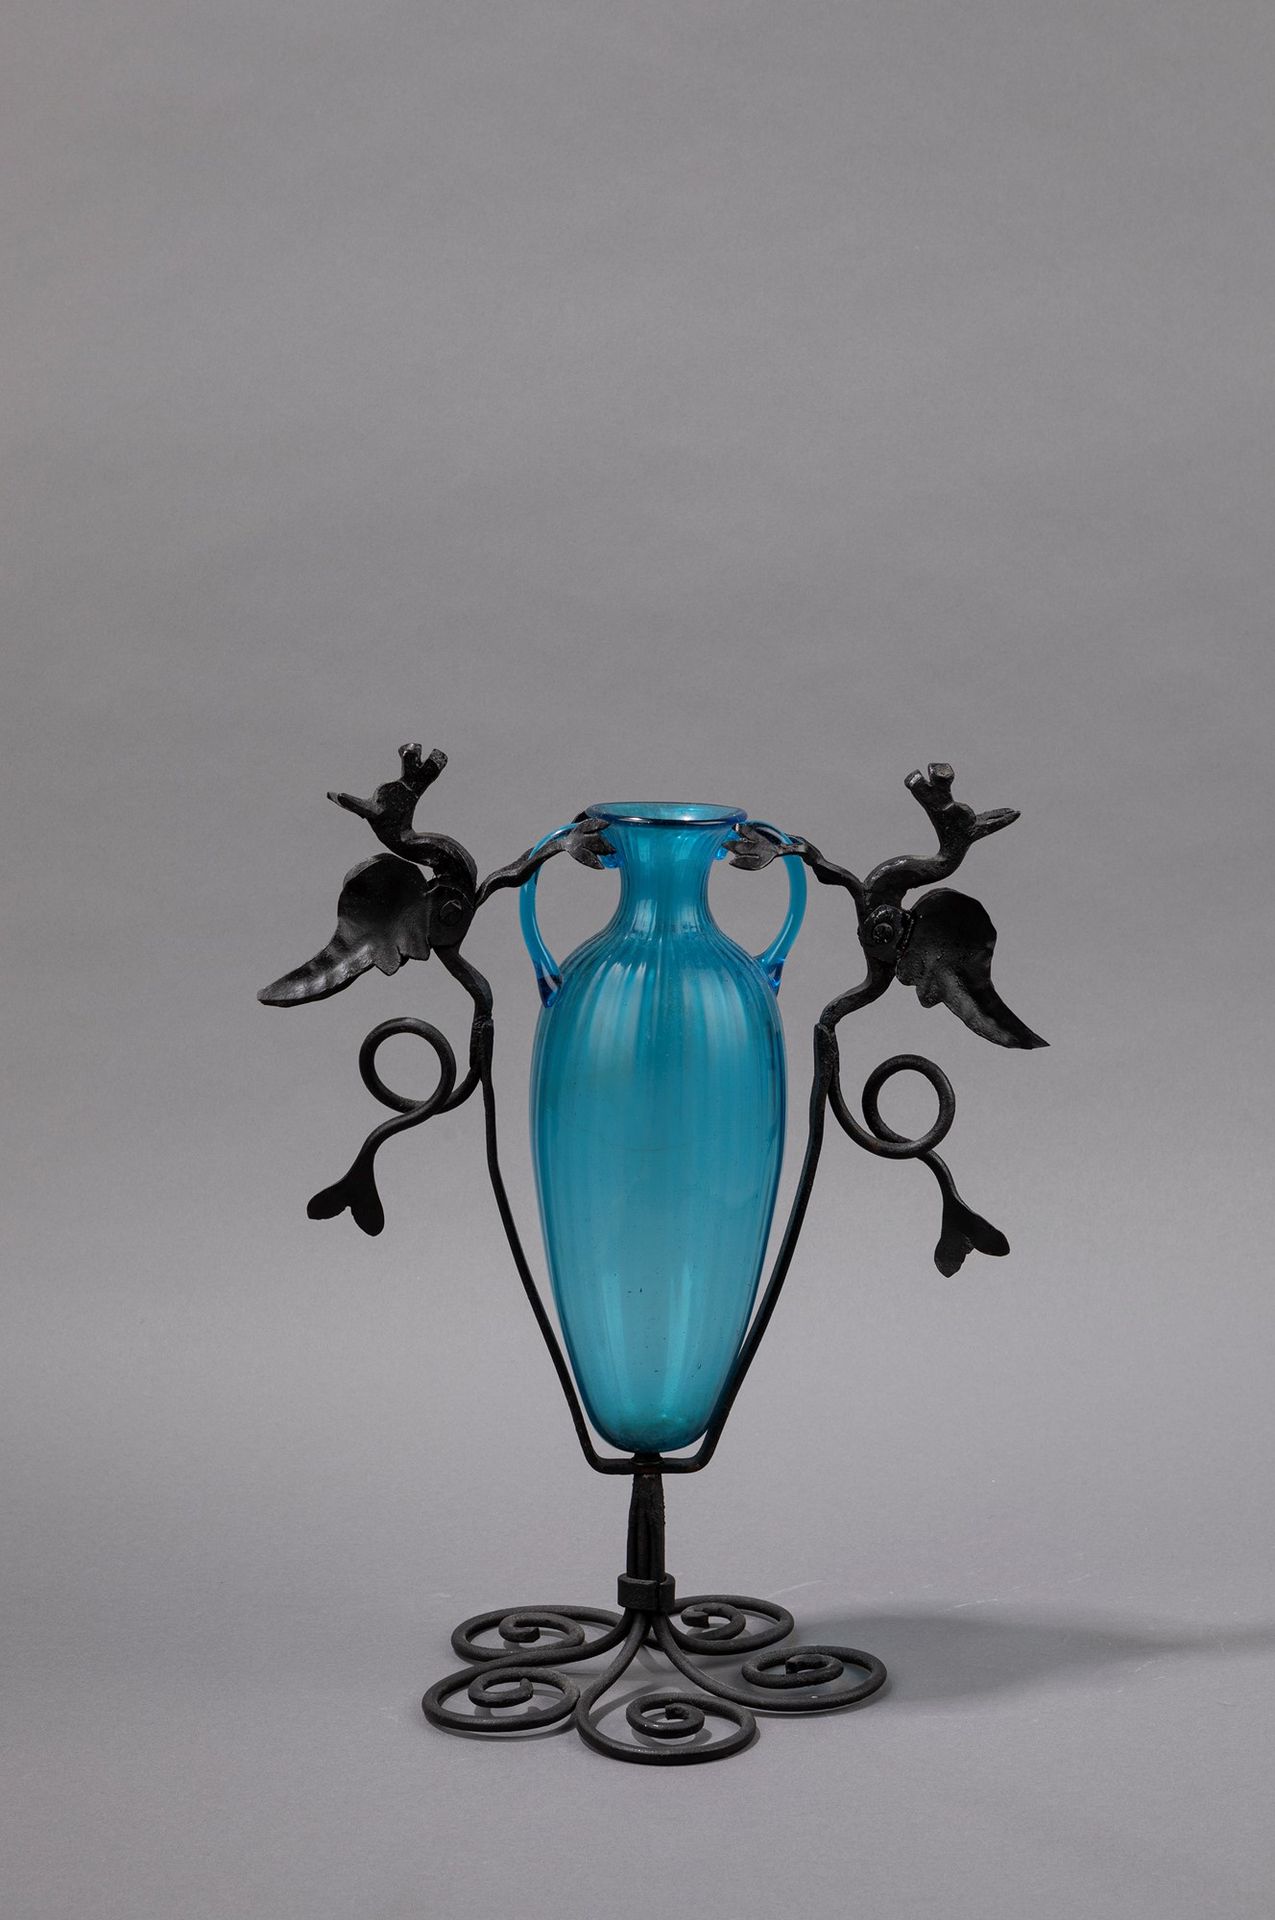 Umberto Bellotto - Fratelli Toso 花瓶，1930年左右

h 33 x 26 cm
穆拉诺吹塑玻璃和锻铁底座。